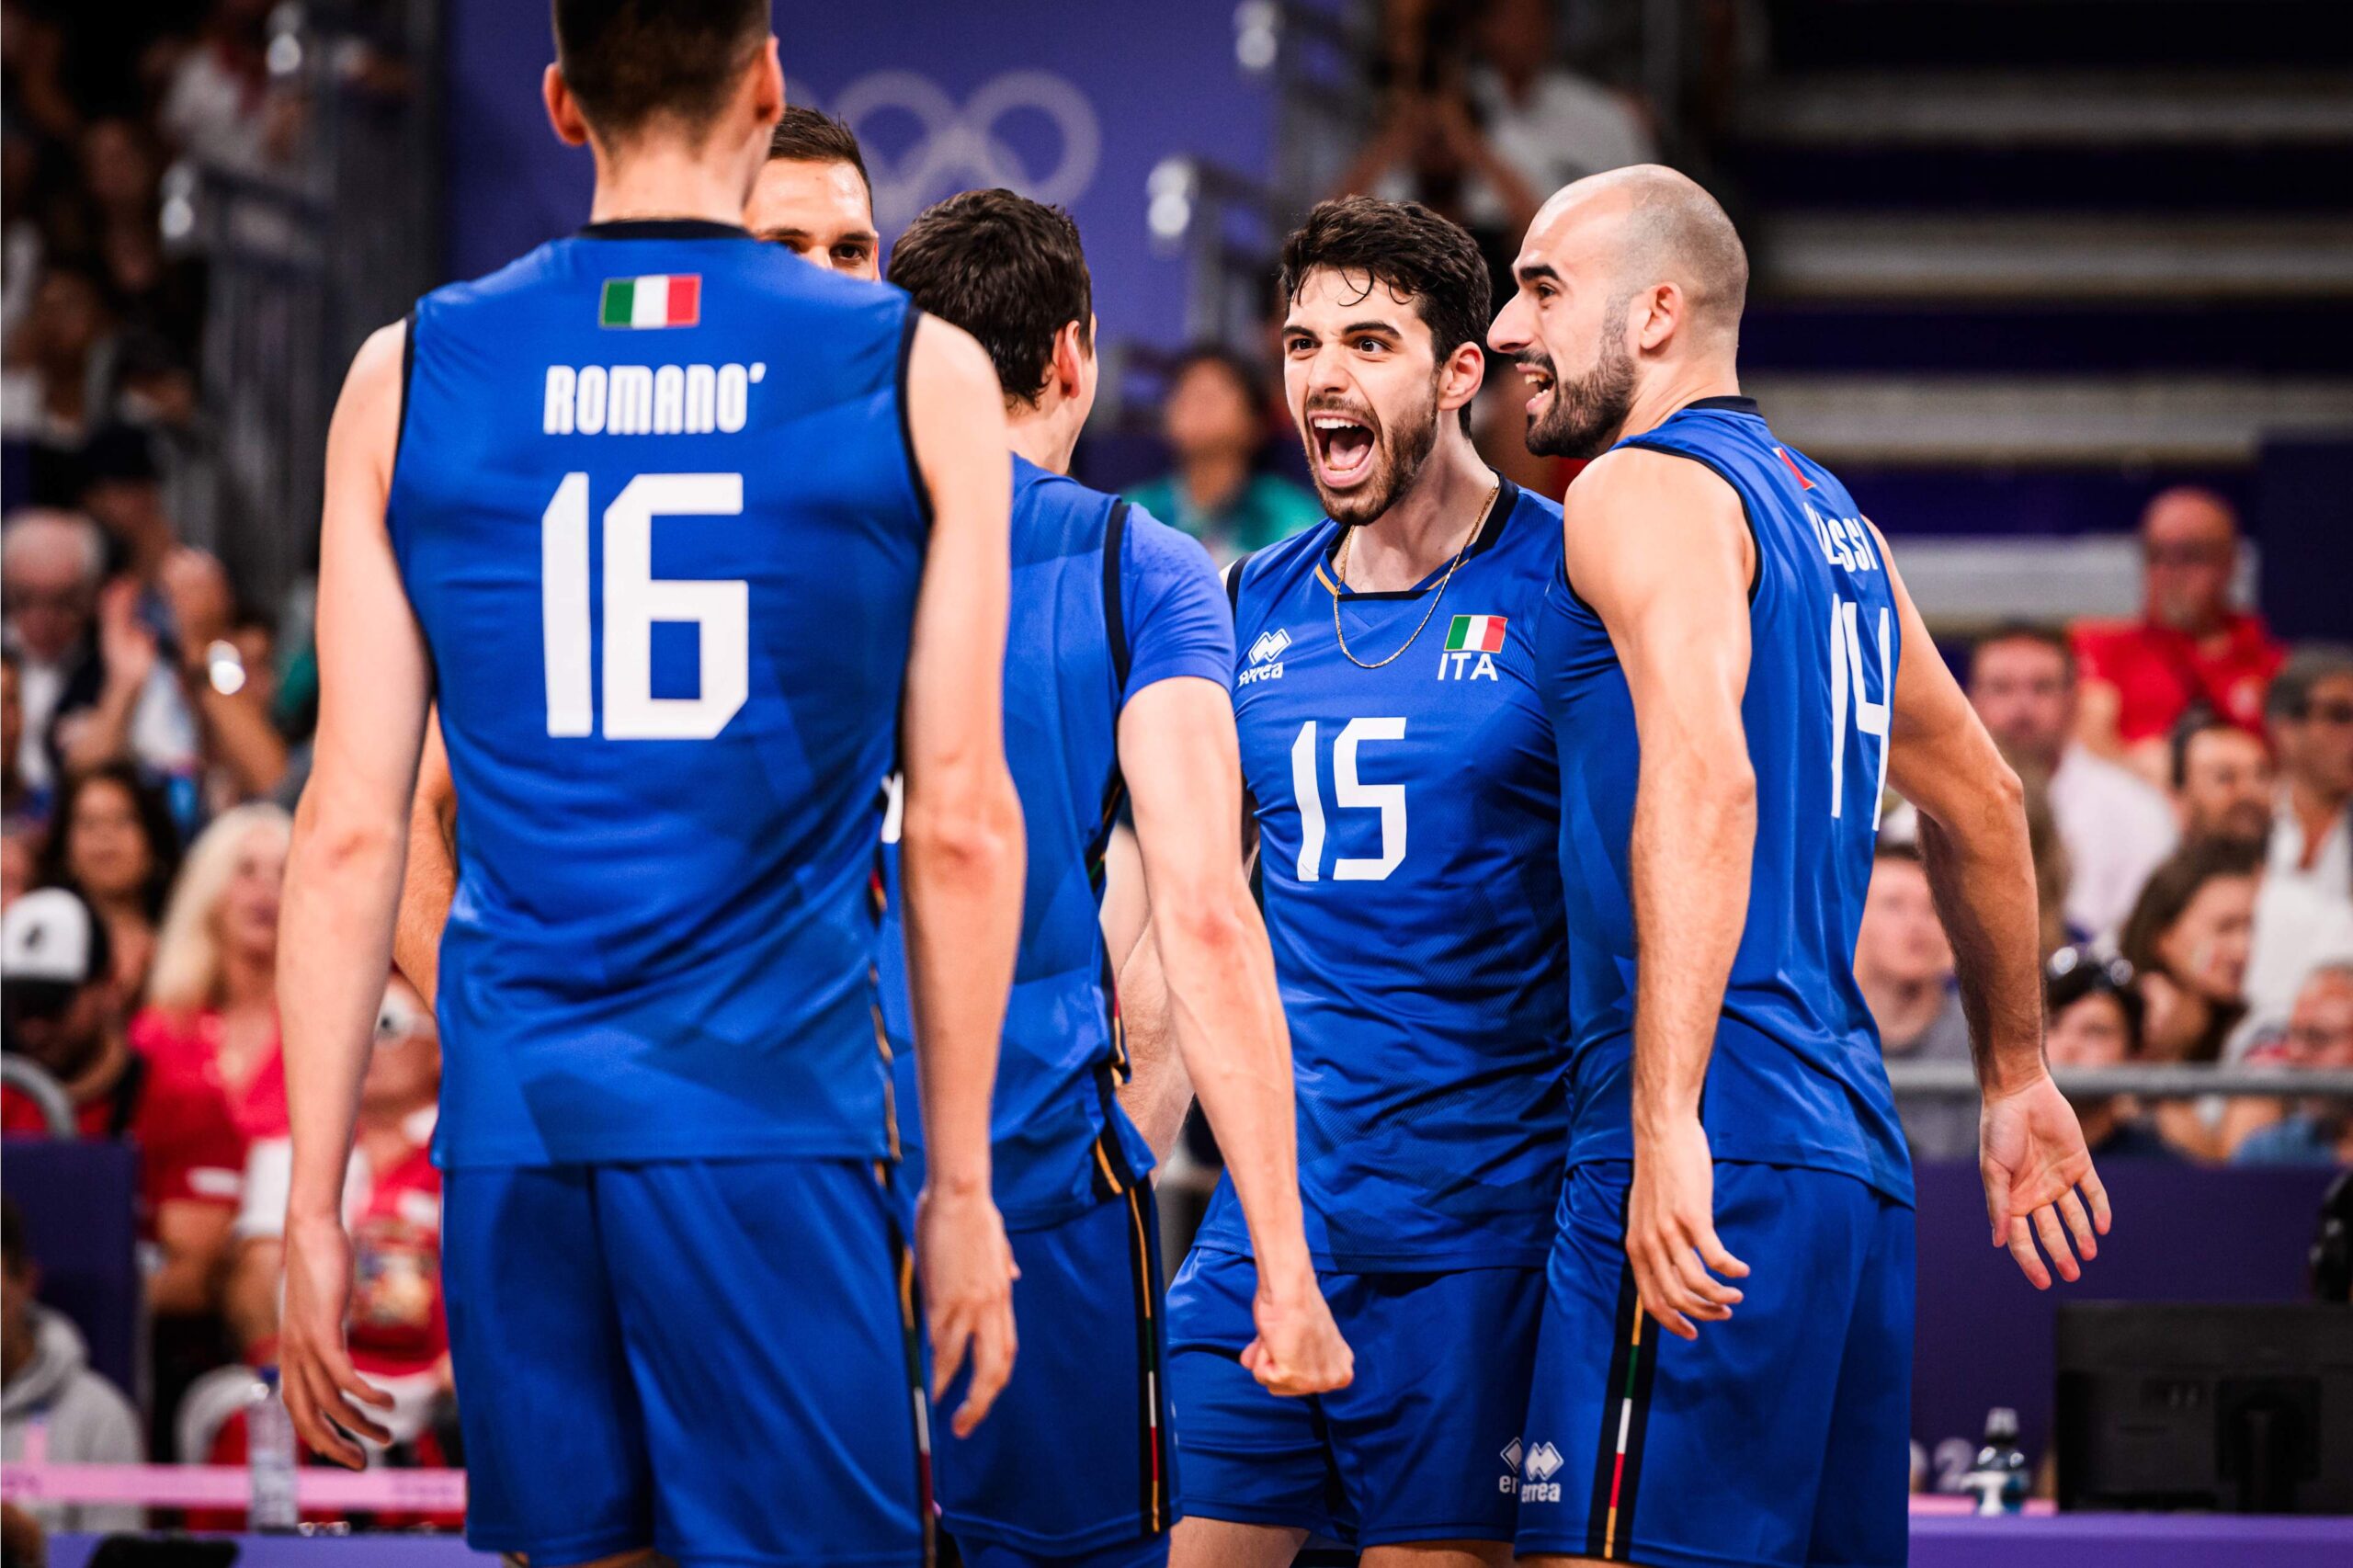 Volley, l’Italia sfida il Giappone nei quarti: Ishikawa e compagni ostacolo duro sulla strada del podio per gli azzurri